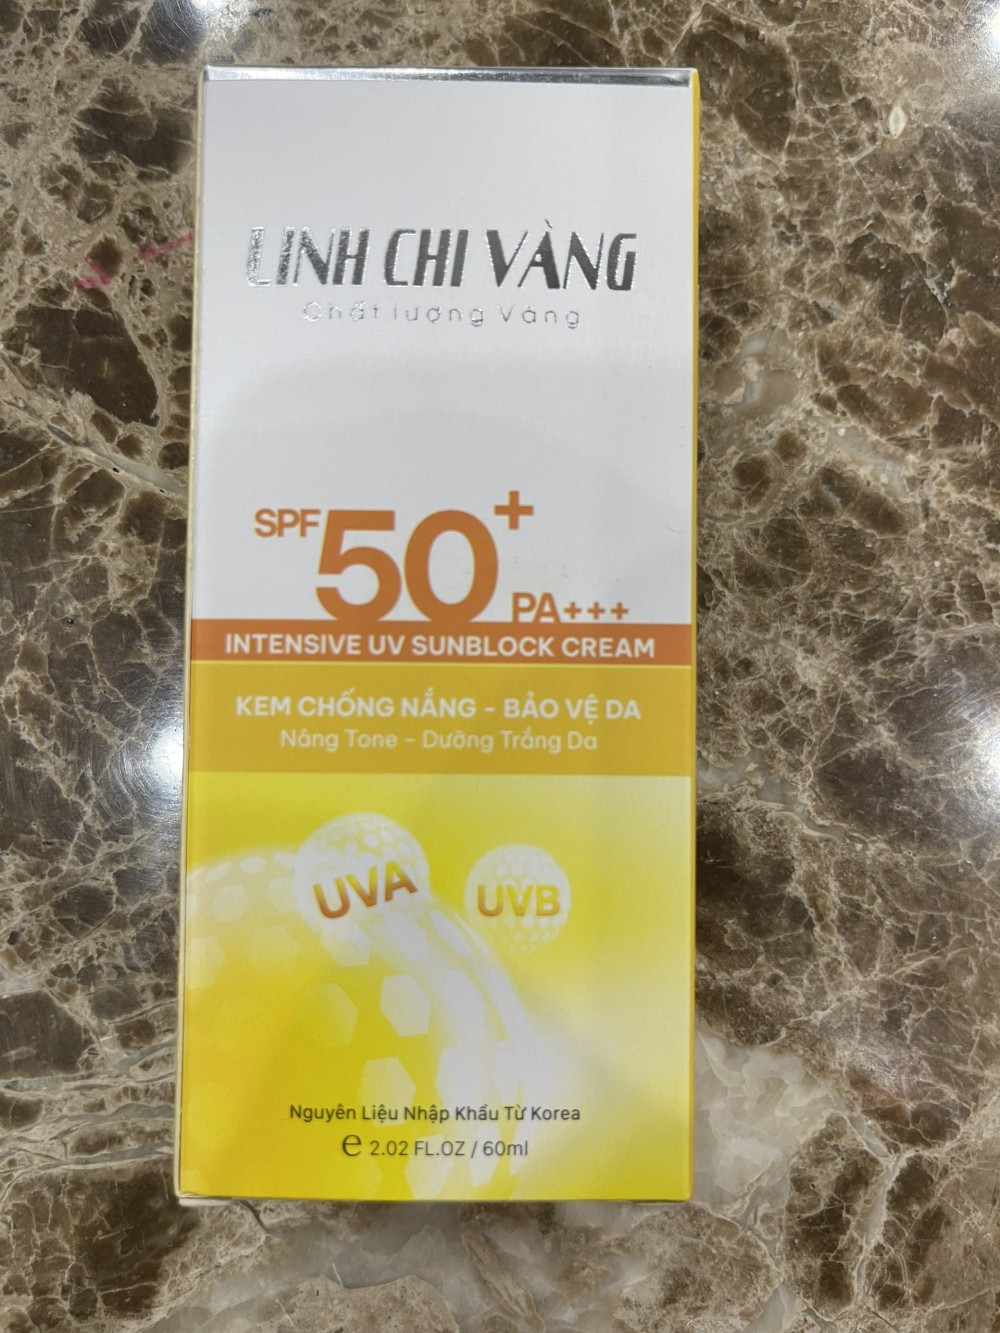 Doanh nghiệp tường trình về lô sản phẩm kem chống nắng - Bảo vệ da Linh Chi Vàng bị thu hồi